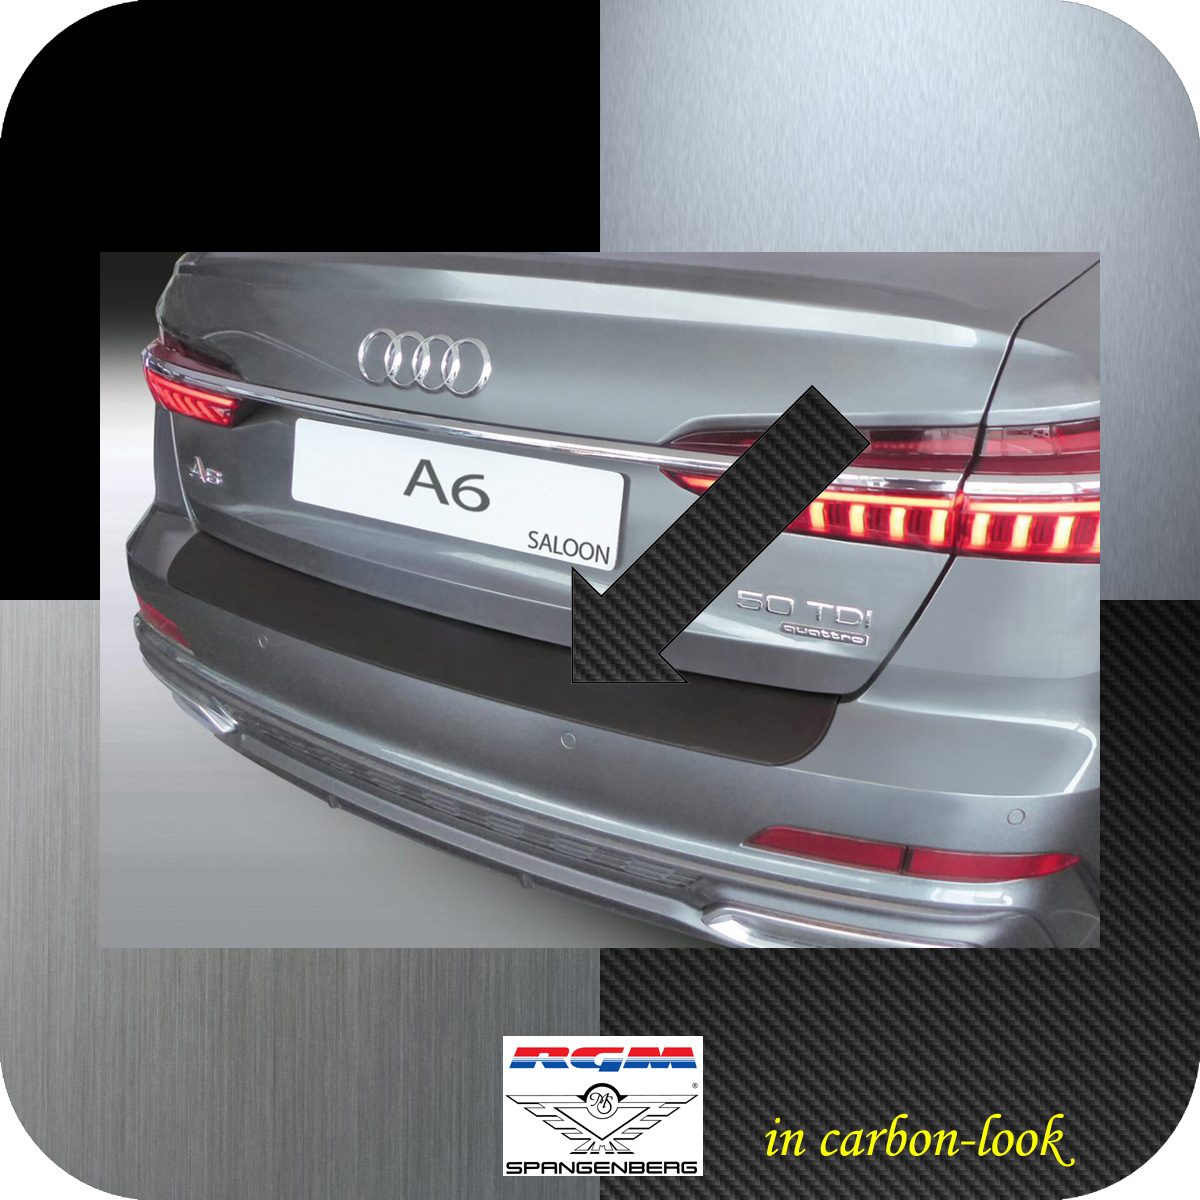 Ladekantenschutz Carbon-Look Audi A6 Limousine Typ C8 ab Baujahr 03.18-  3509896